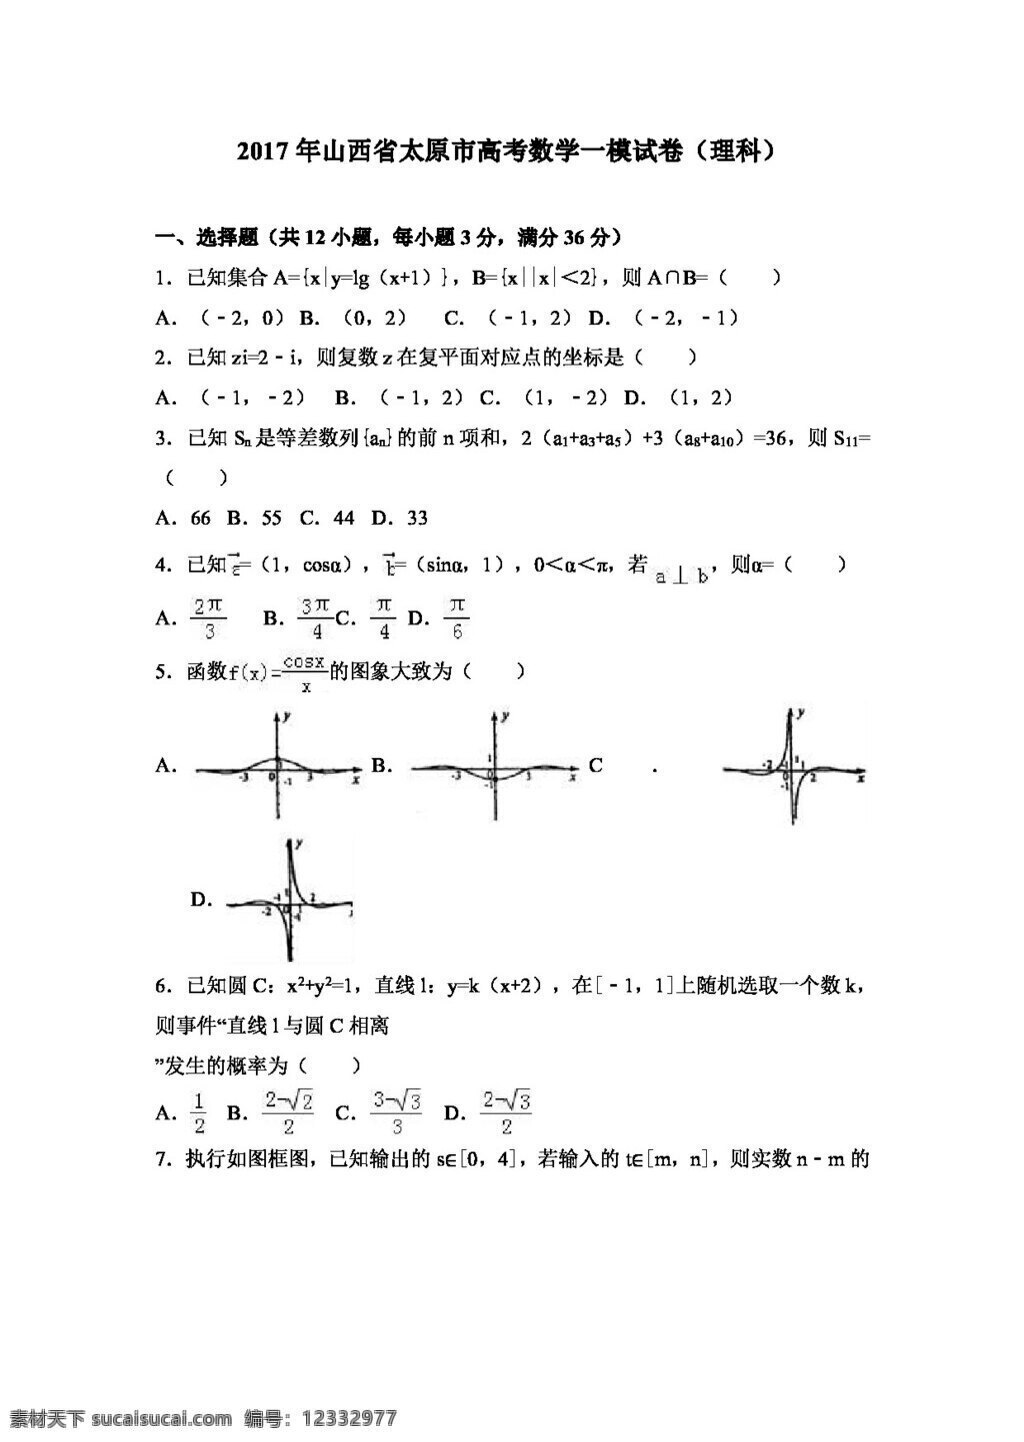 数学 人教 版 2017 年 山西省 太原市 高考 模 试卷 理科 高考专区 人教版